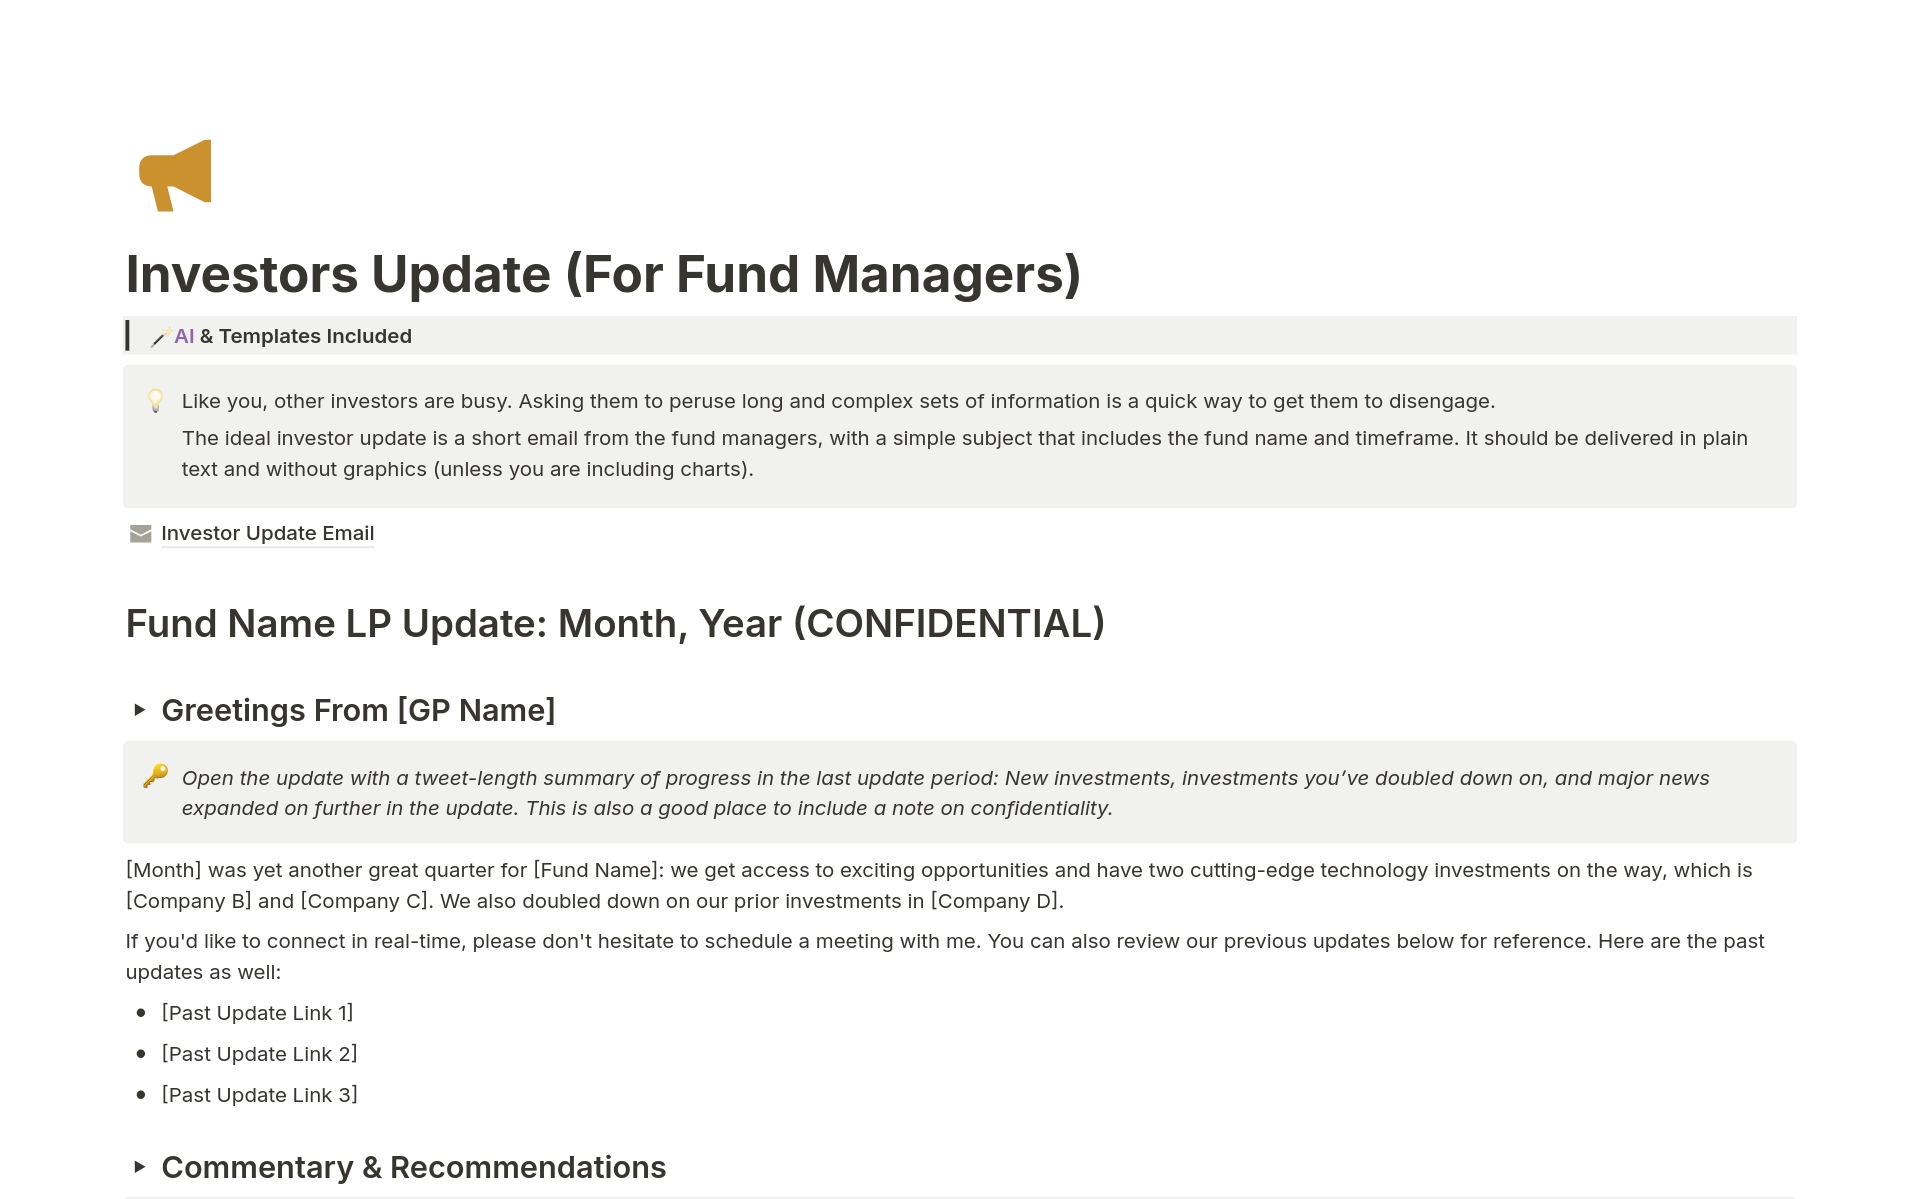 Uma prévia do modelo para Investors Update (For Fund Managers)